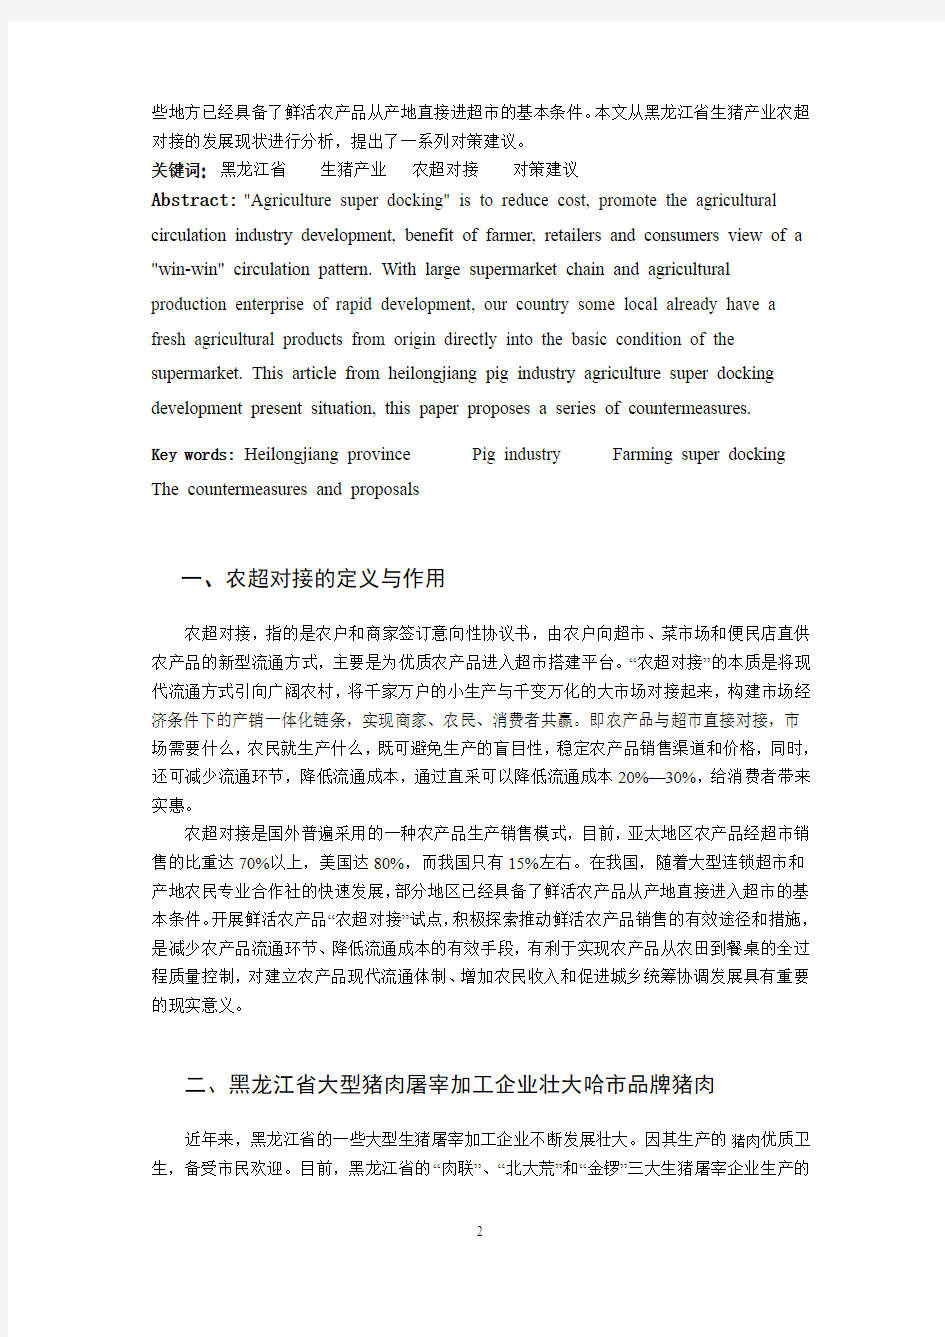 黑龙江省生猪产业农超对接发展现状及对策建议